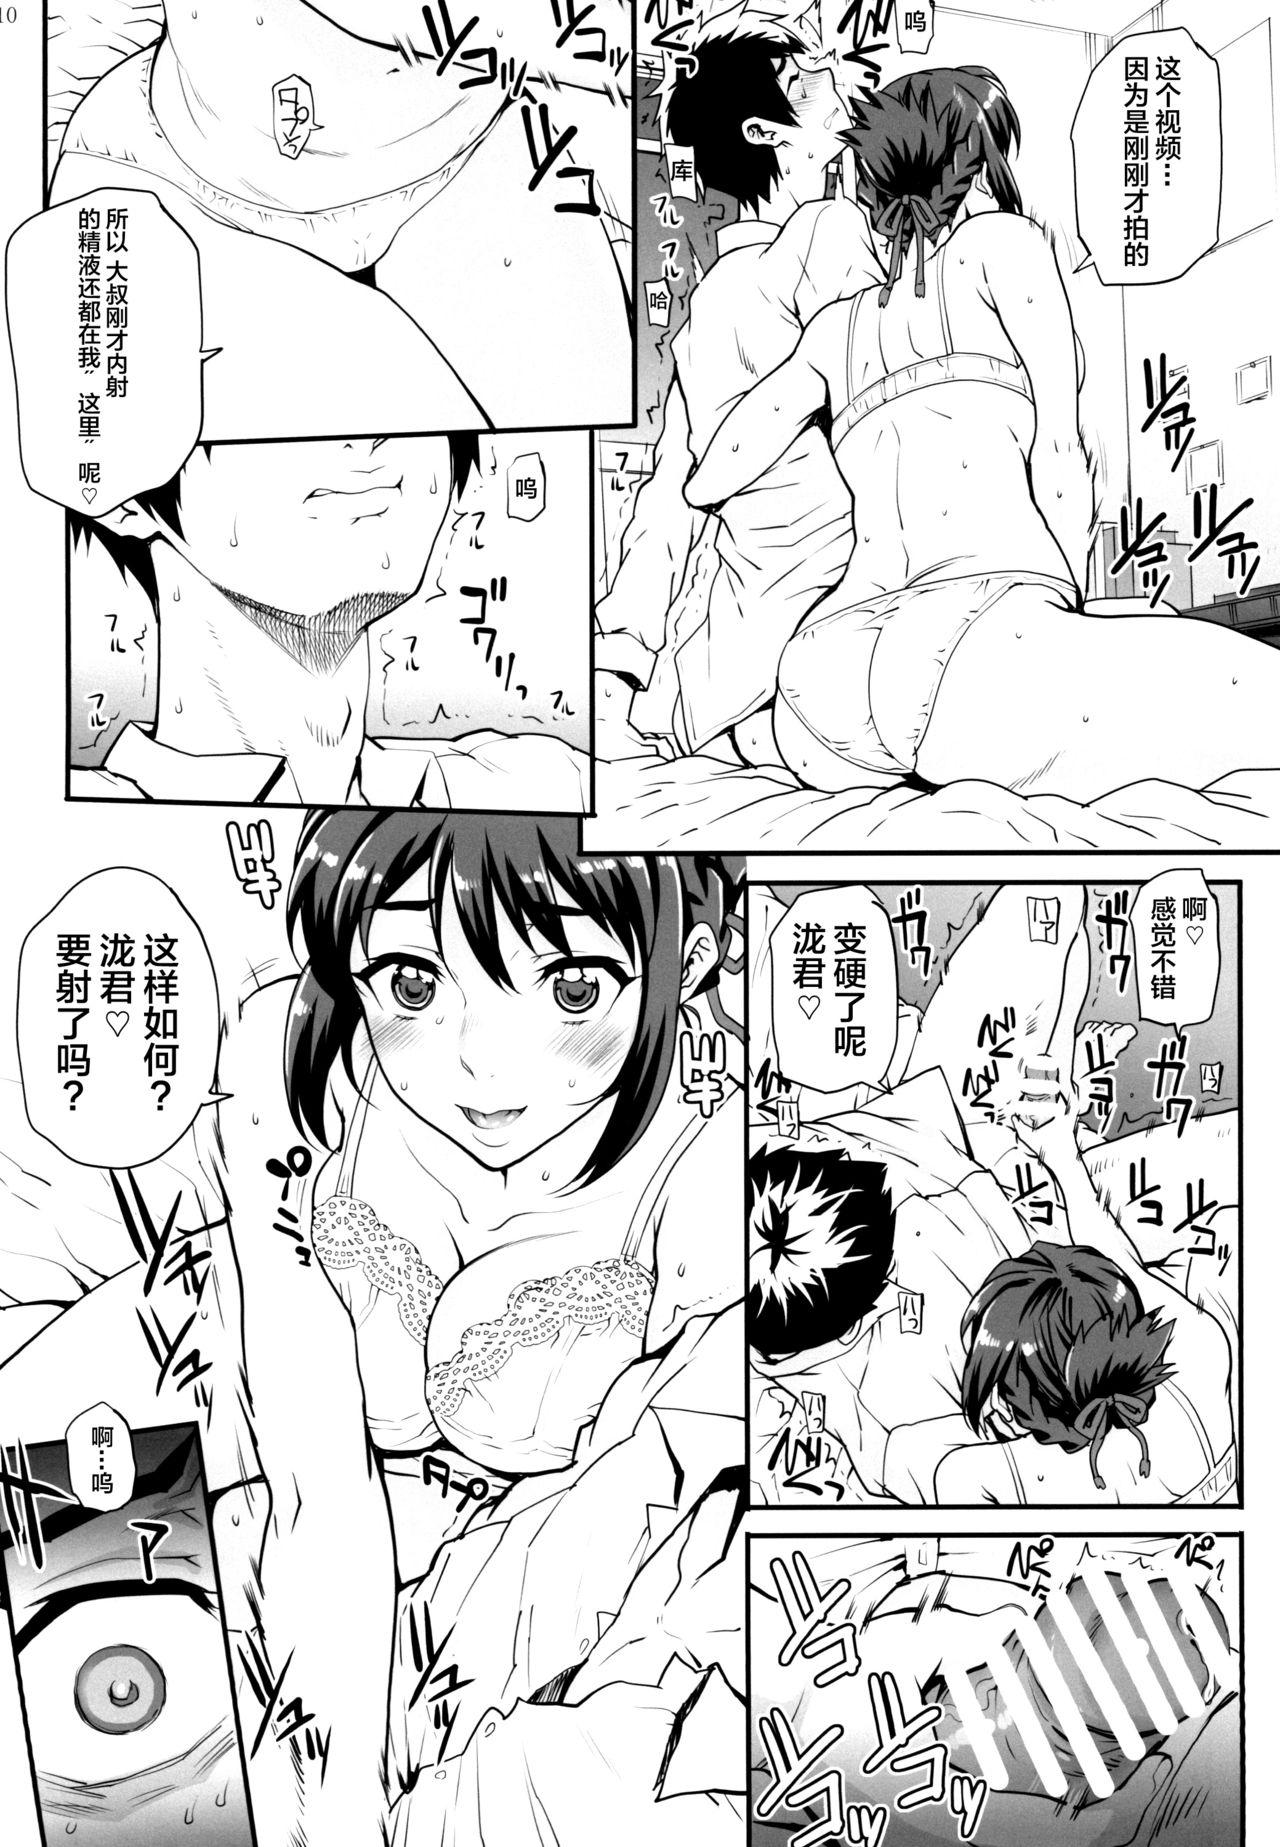 Caught Kimi no Janai. Zoku - Kimi no na wa. 3way - Page 12